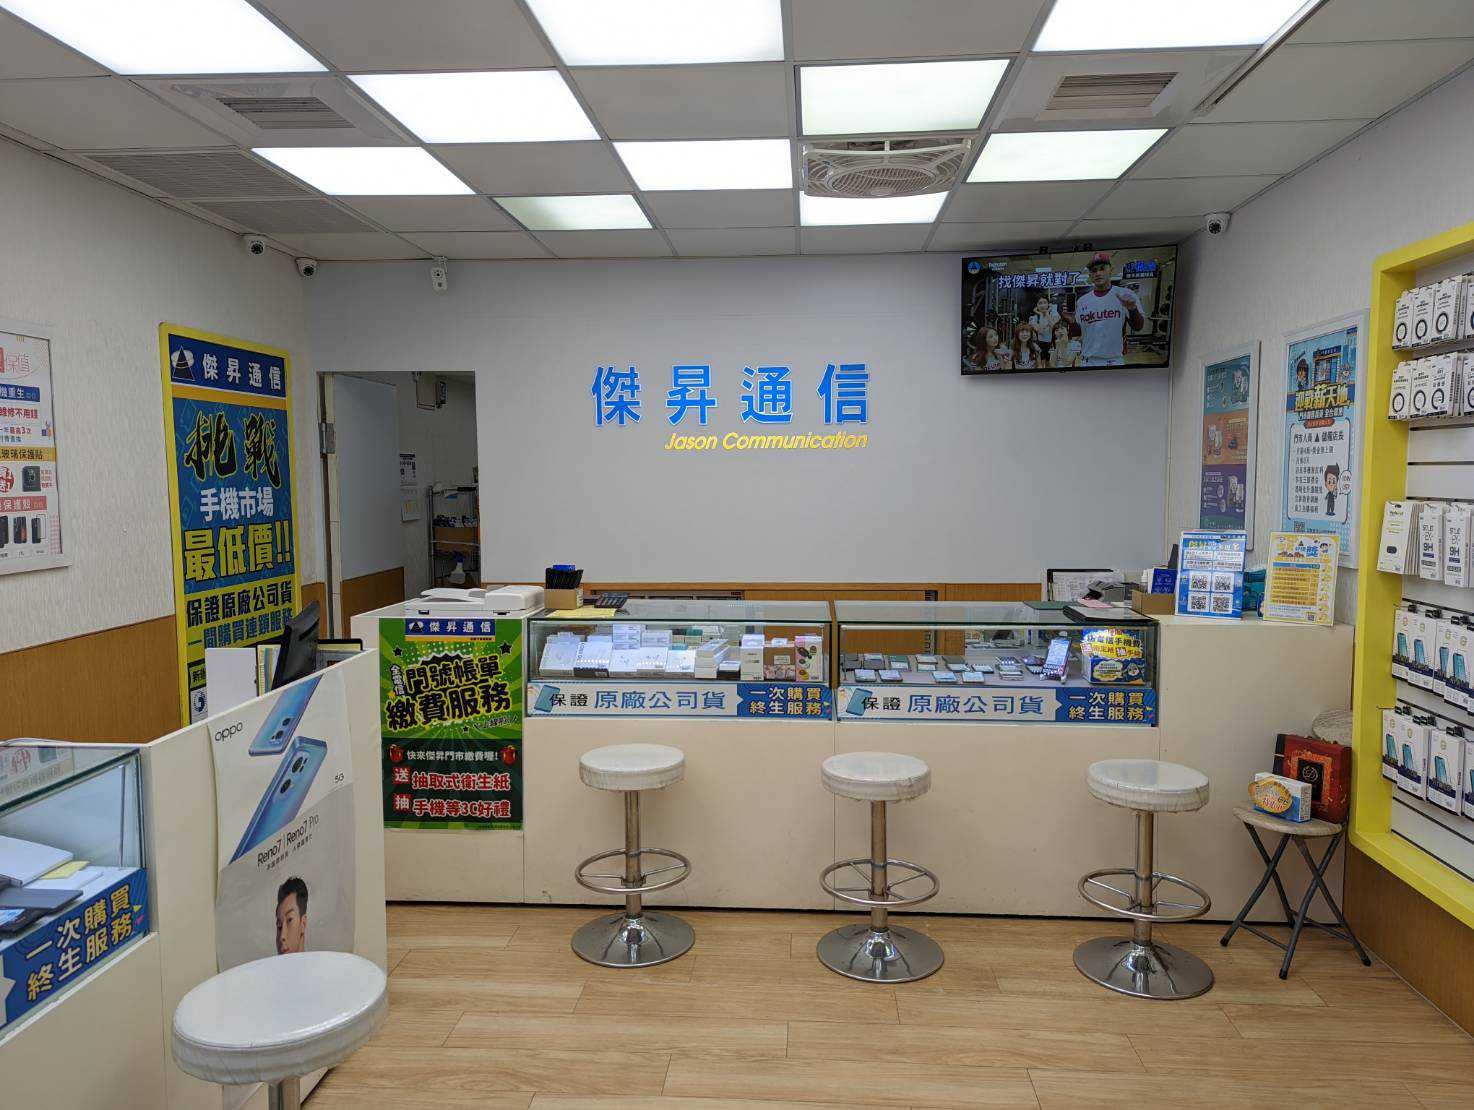 傑昇通信成立於1986年，至今已在台經營超過35年，總共展店超過100間直營門市